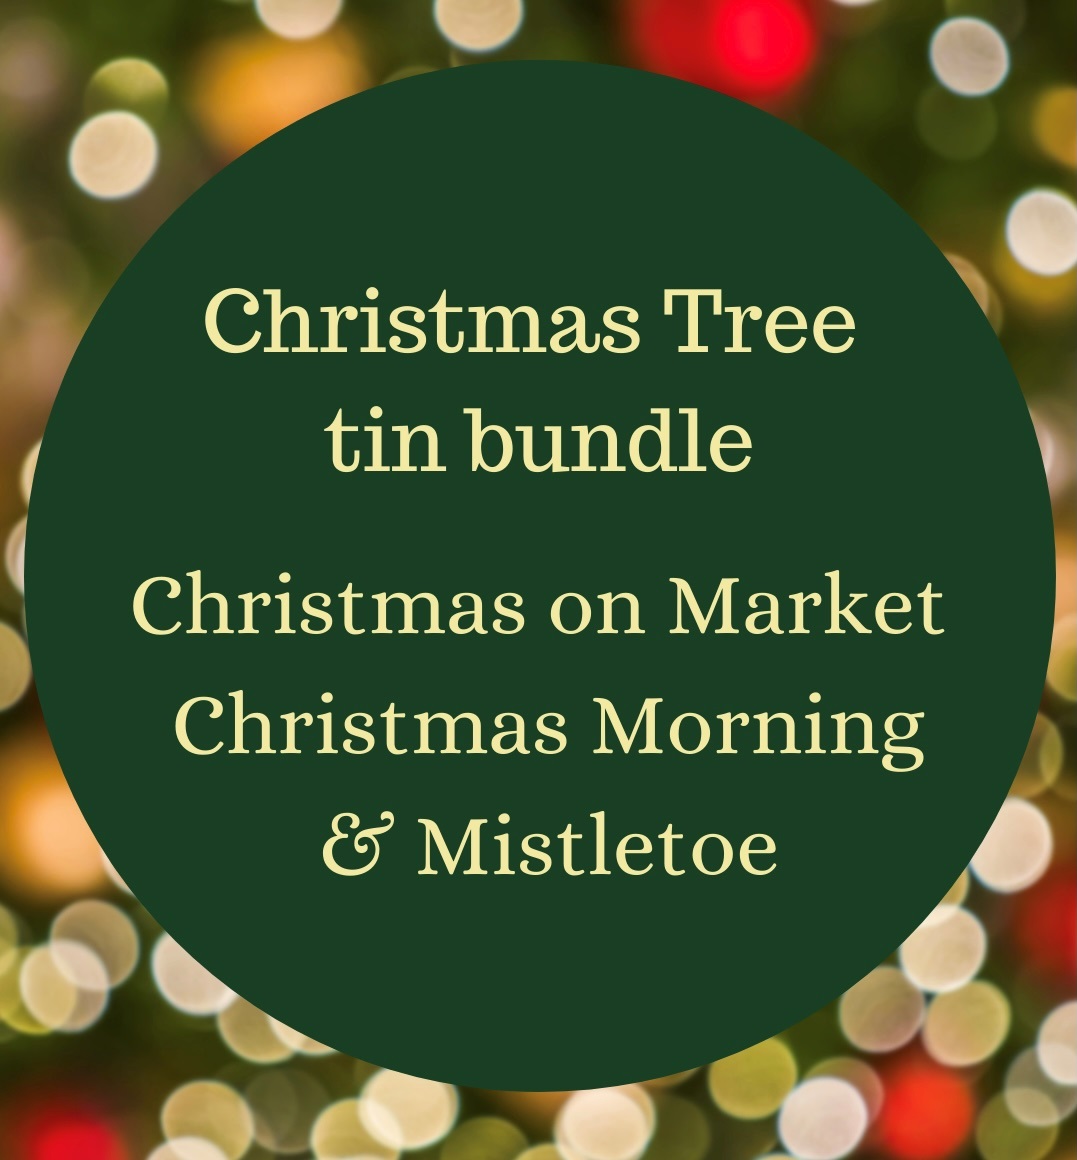 Christmas Tree 3 tin bundle